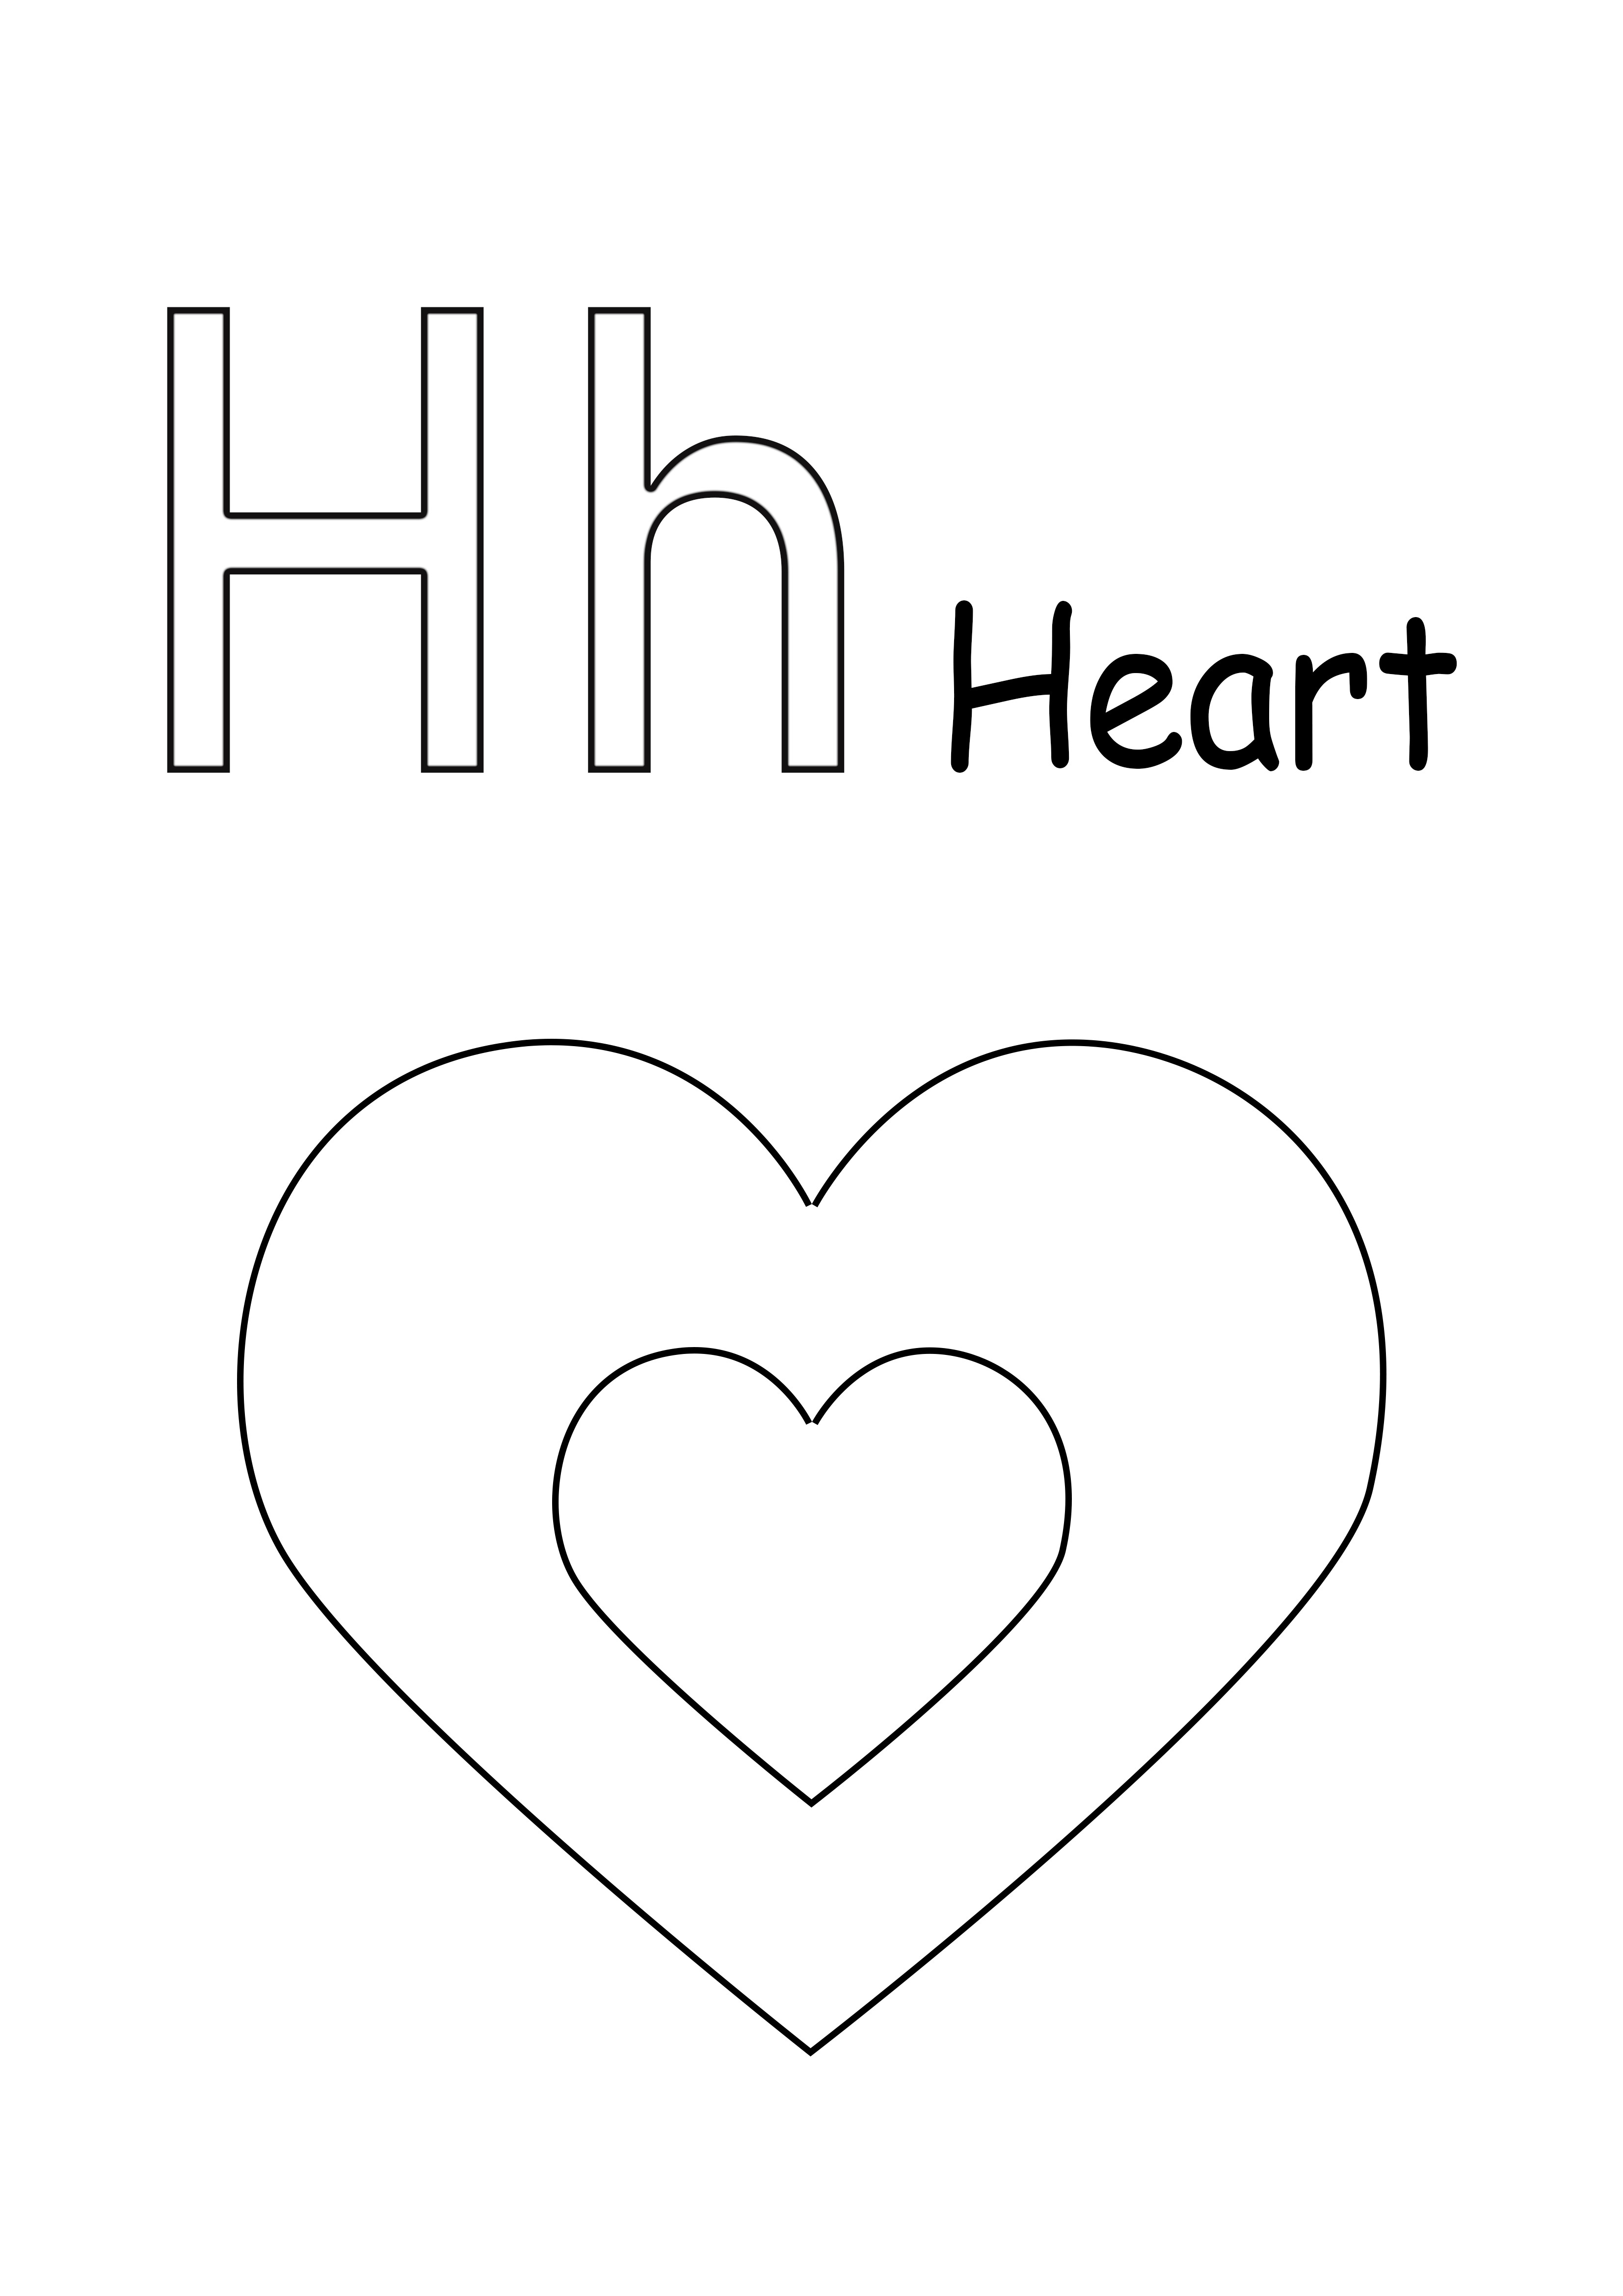 H es para el corazón imagen simple para colorear e imprimir